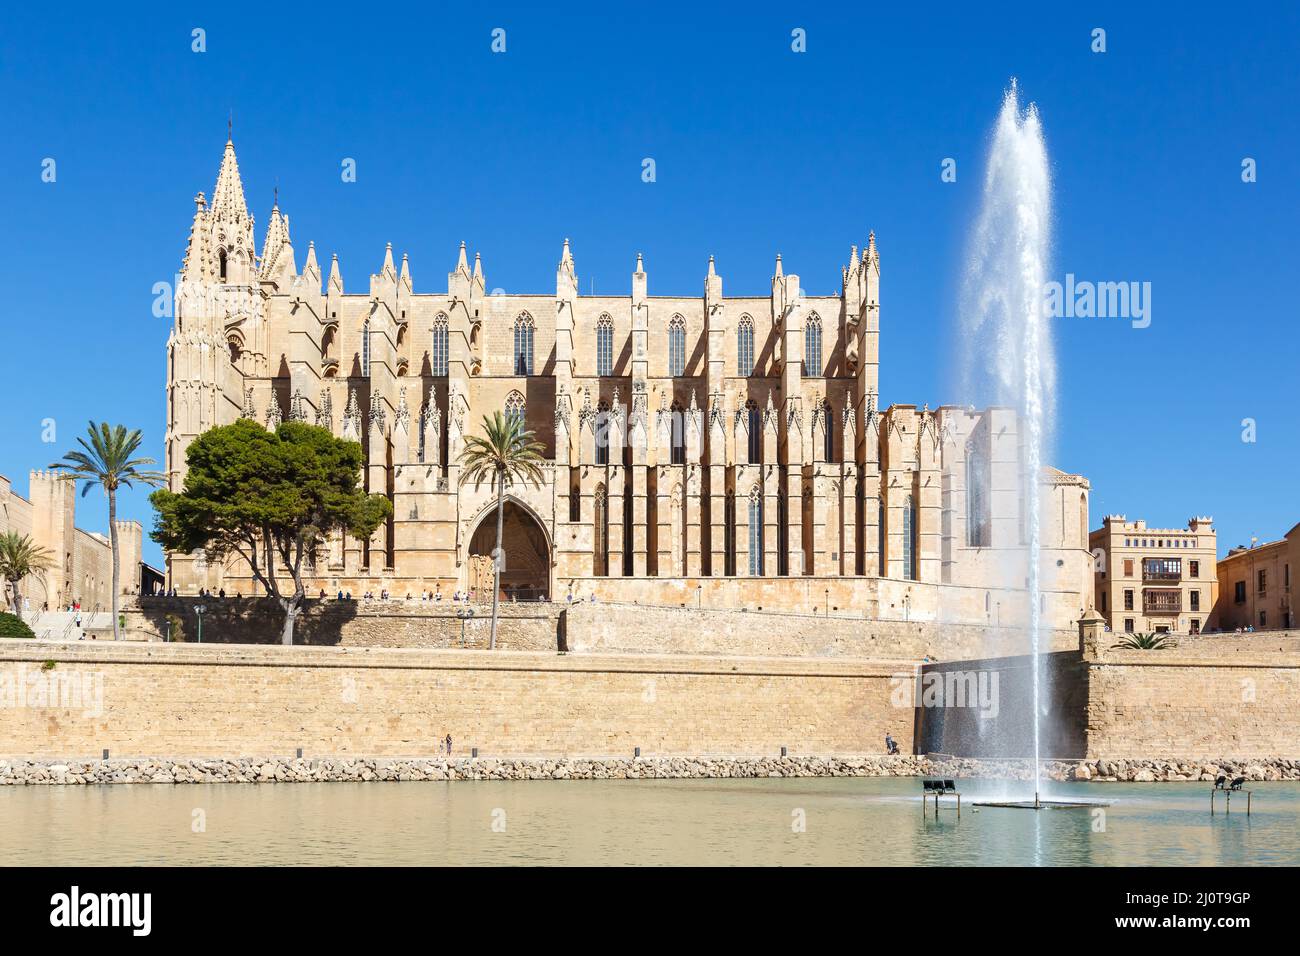 Cathédrale Catedral de Palma de Mallorca la Seu église architecture vacances voyage en Espagne Banque D'Images